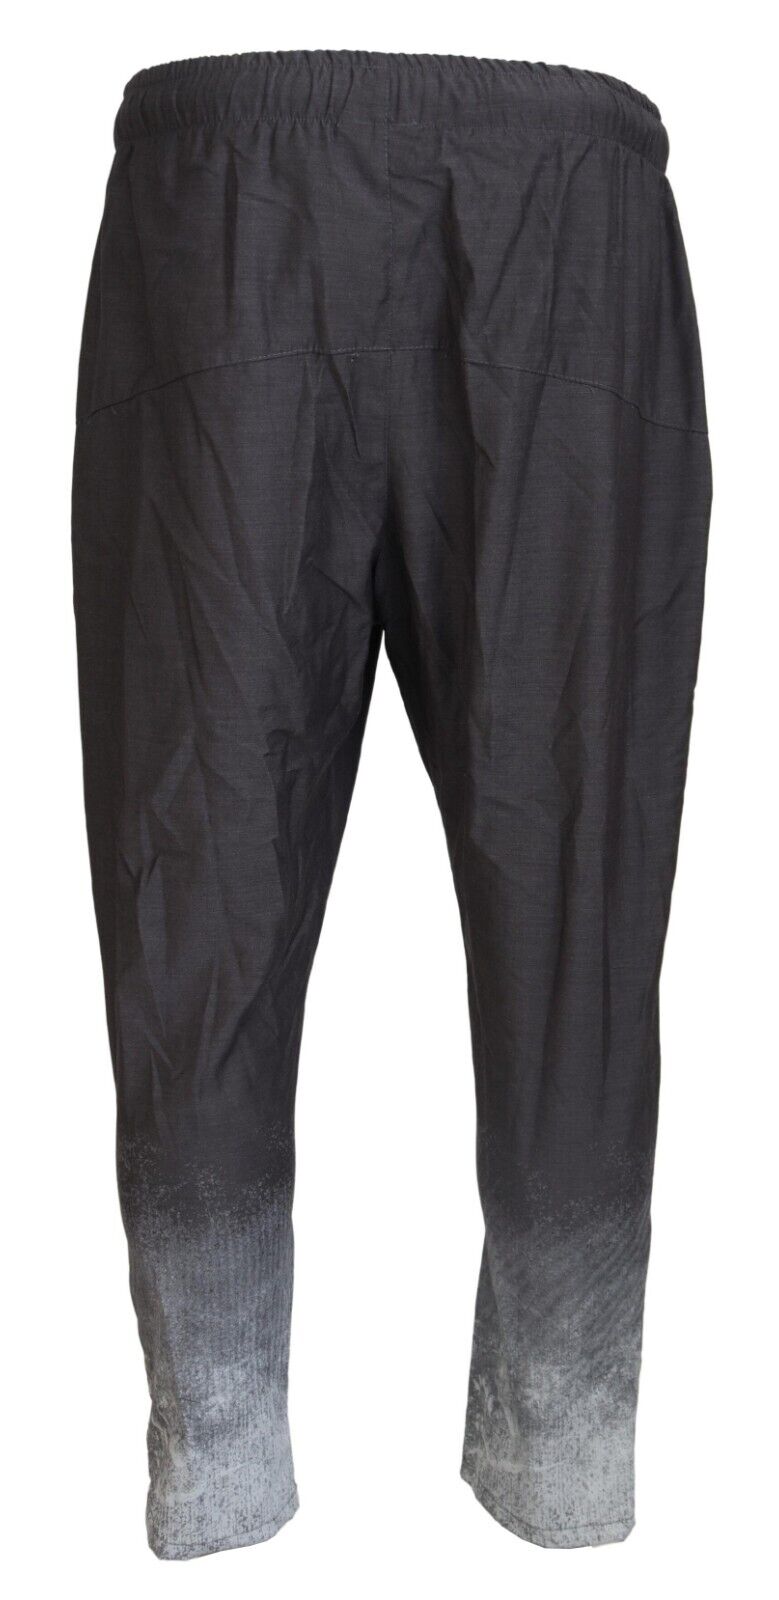 Брюки MAISON 9 PARIS темно-серые, с эффектом омбре, зауженные мужские повседневные брюки из полиэстера s.Tag 31 $150